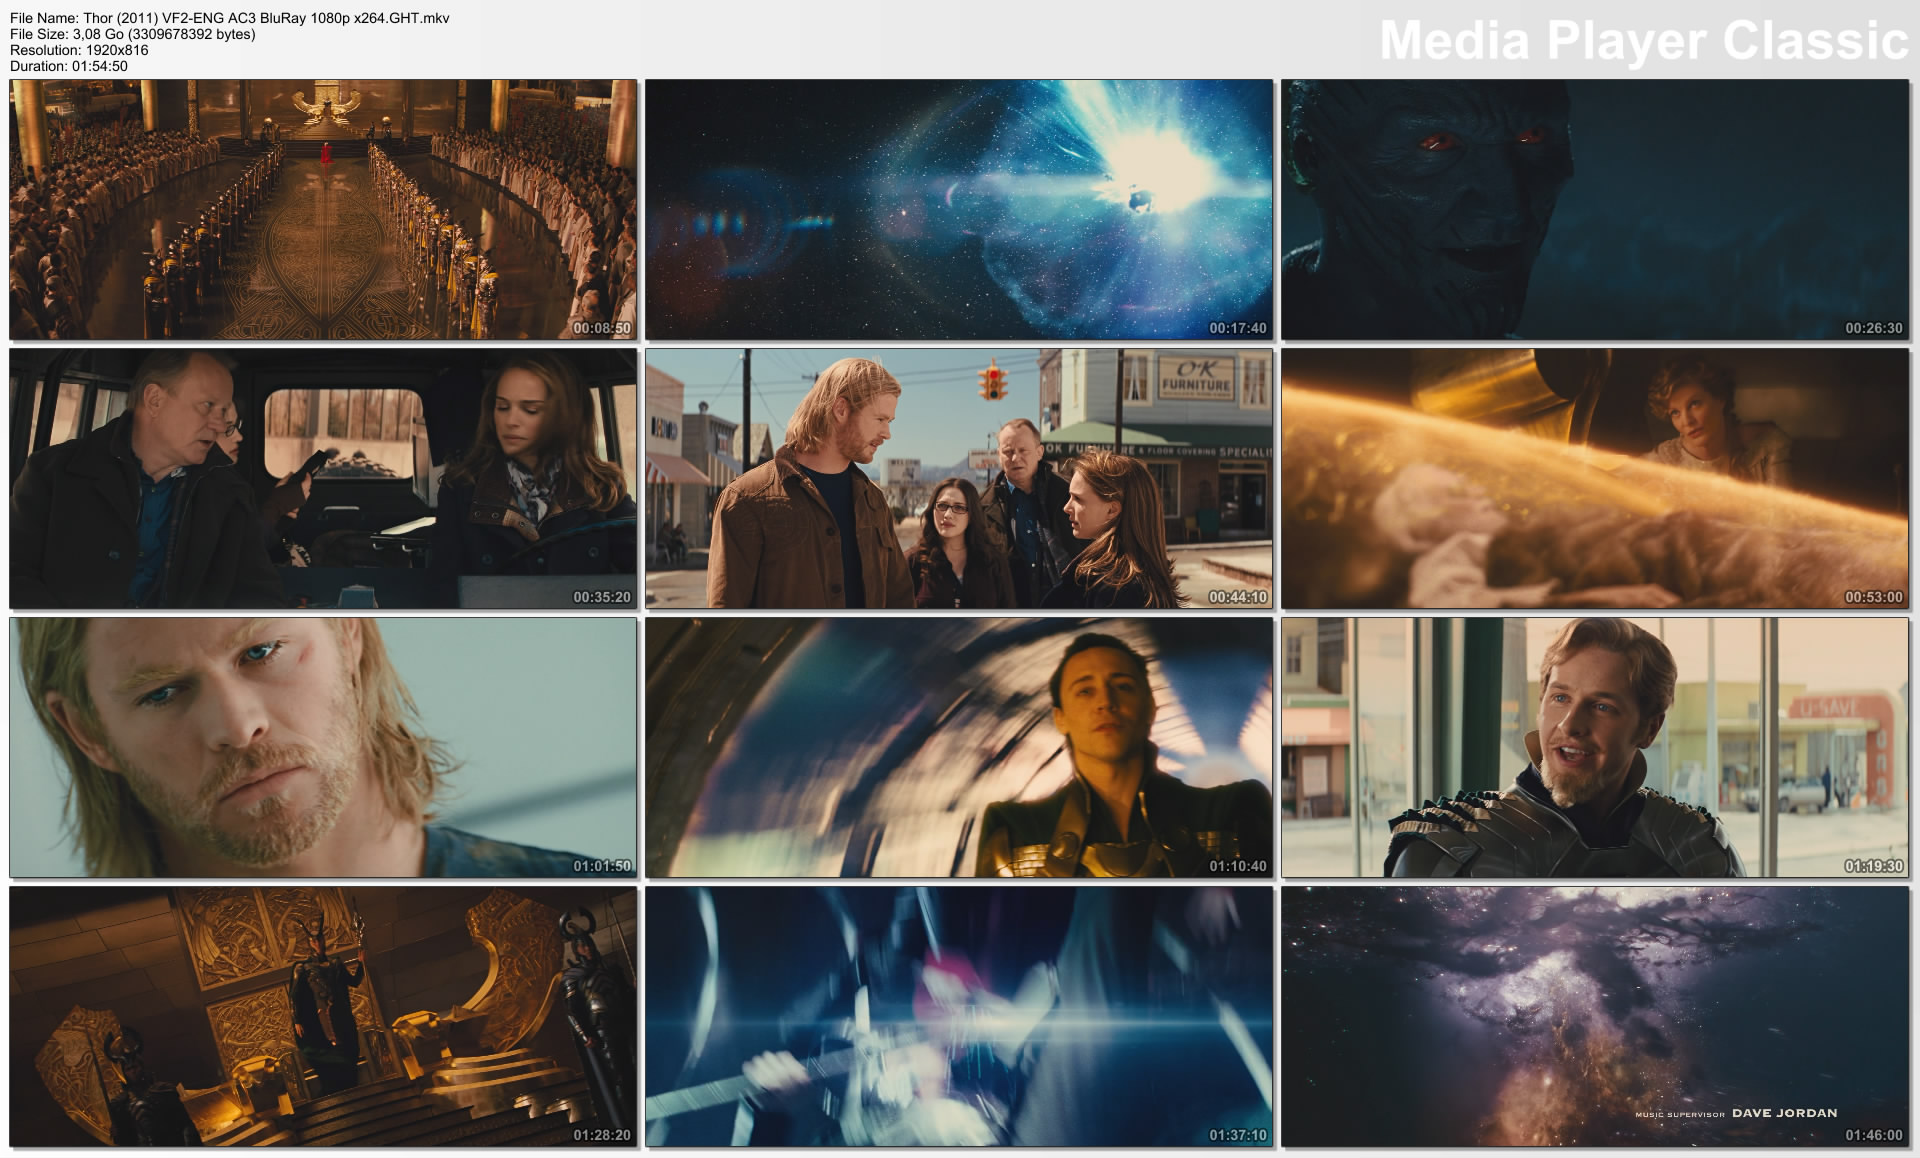 Thor (2011) VF2-ENG AC3 BluRay 1080p x264.GHT